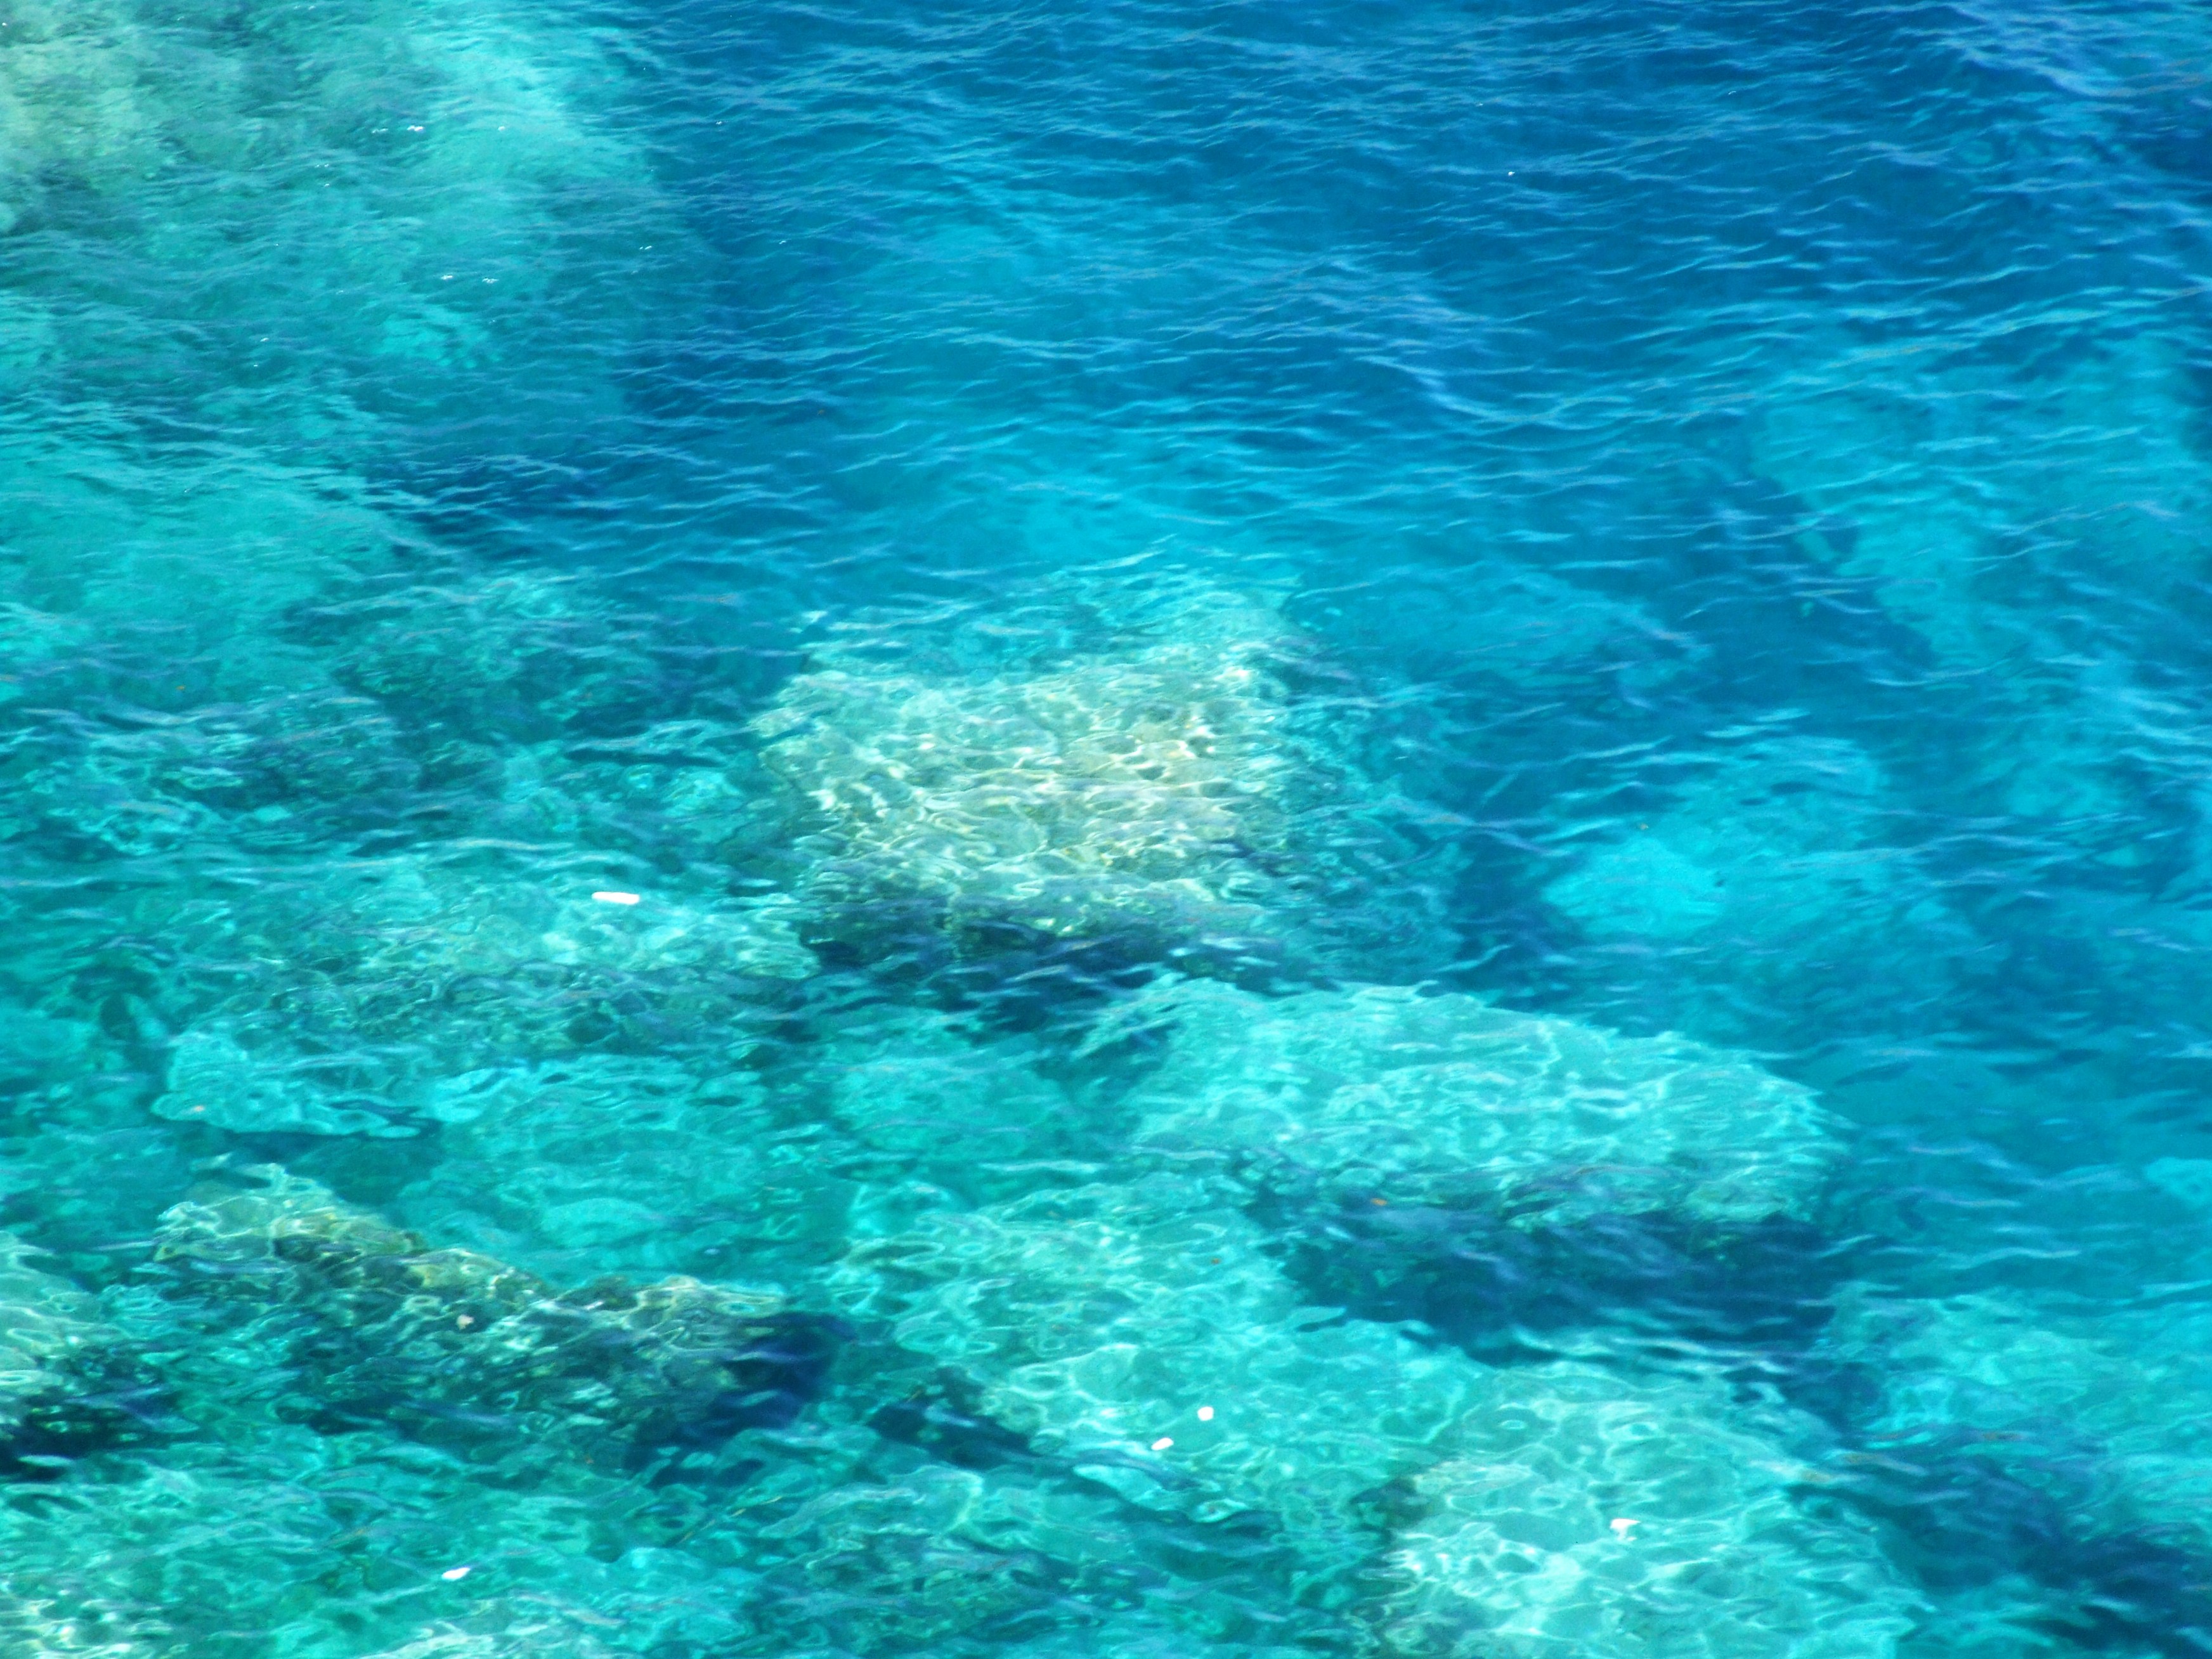 Sea isola bella-taormina-messina-sicilia-italy - creative commons by gnuckx photo